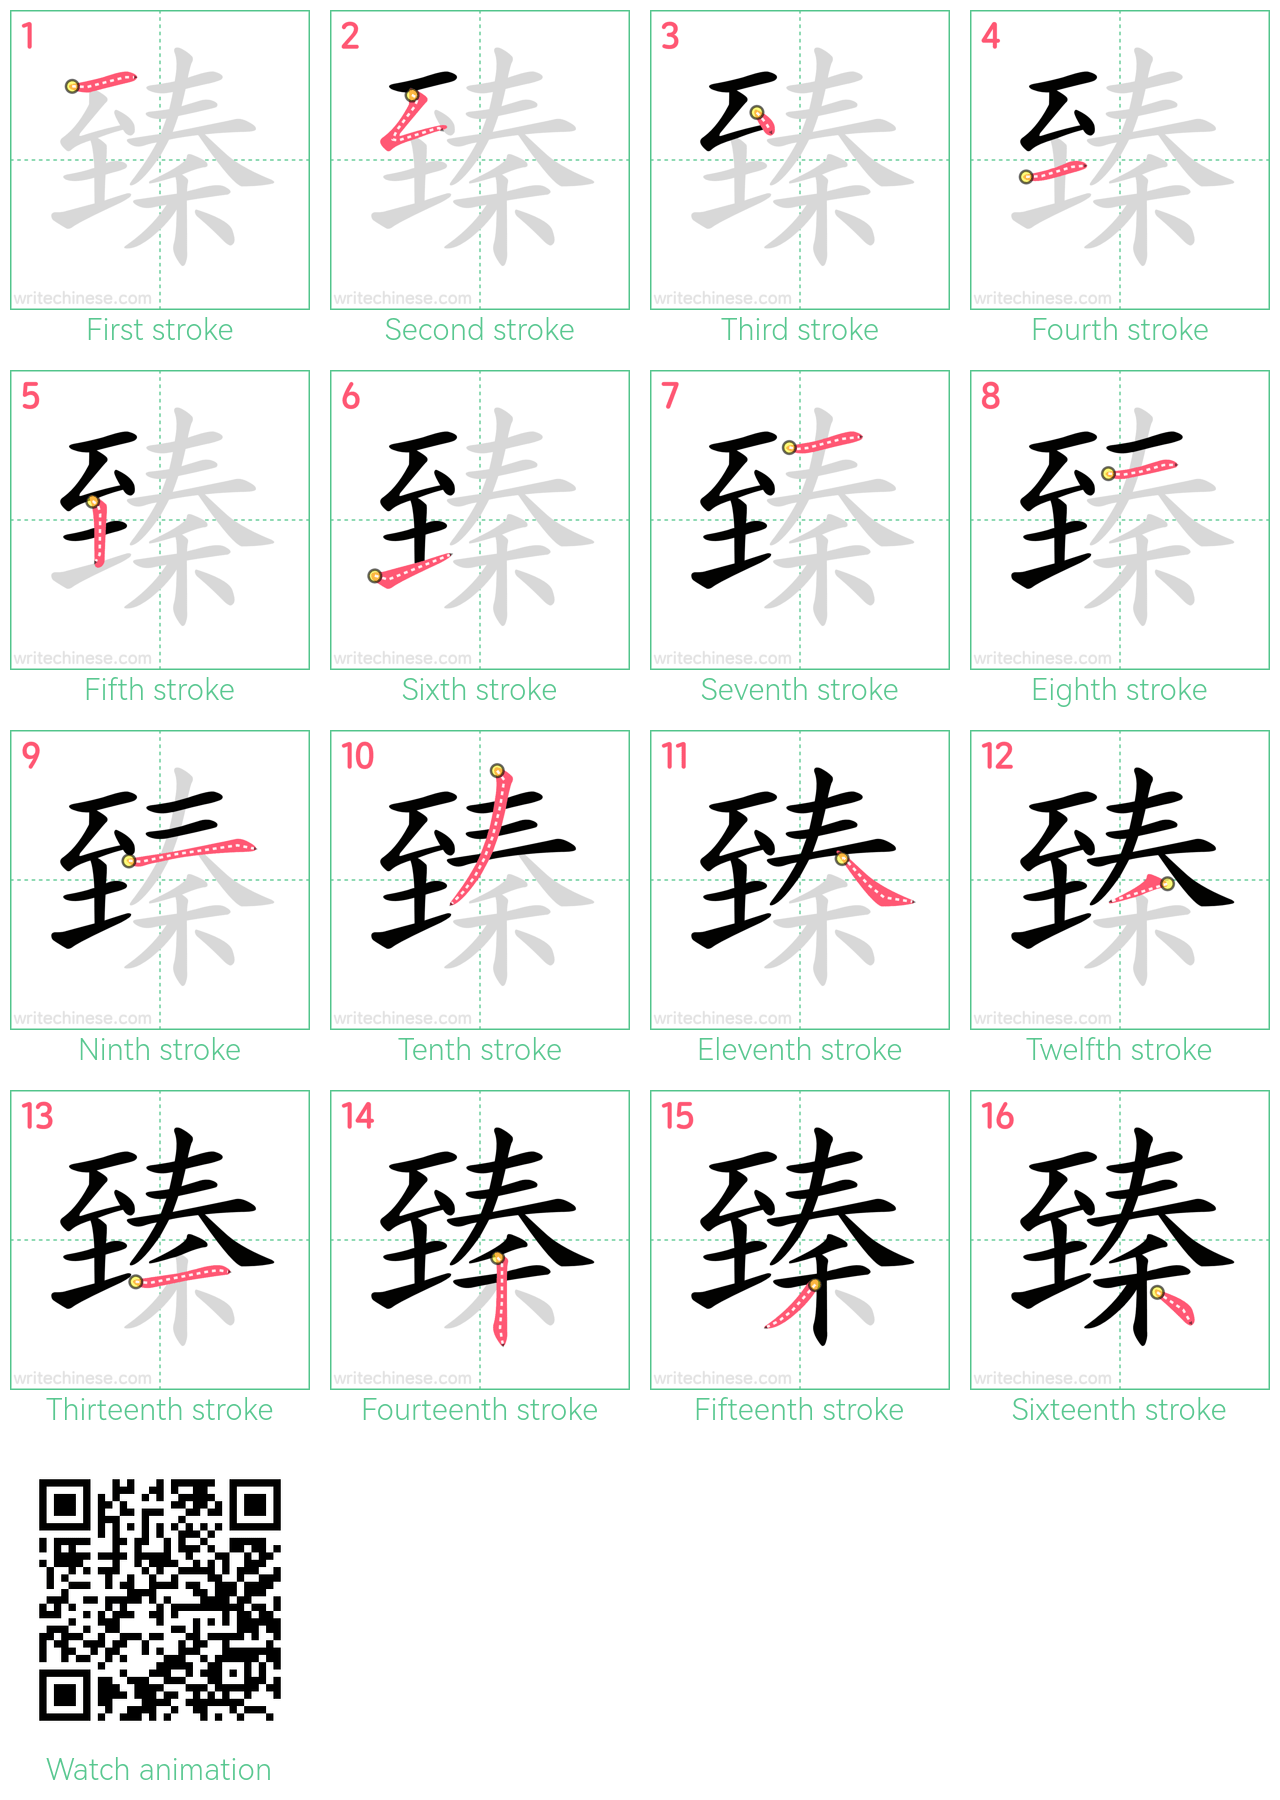 臻 step-by-step stroke order diagrams